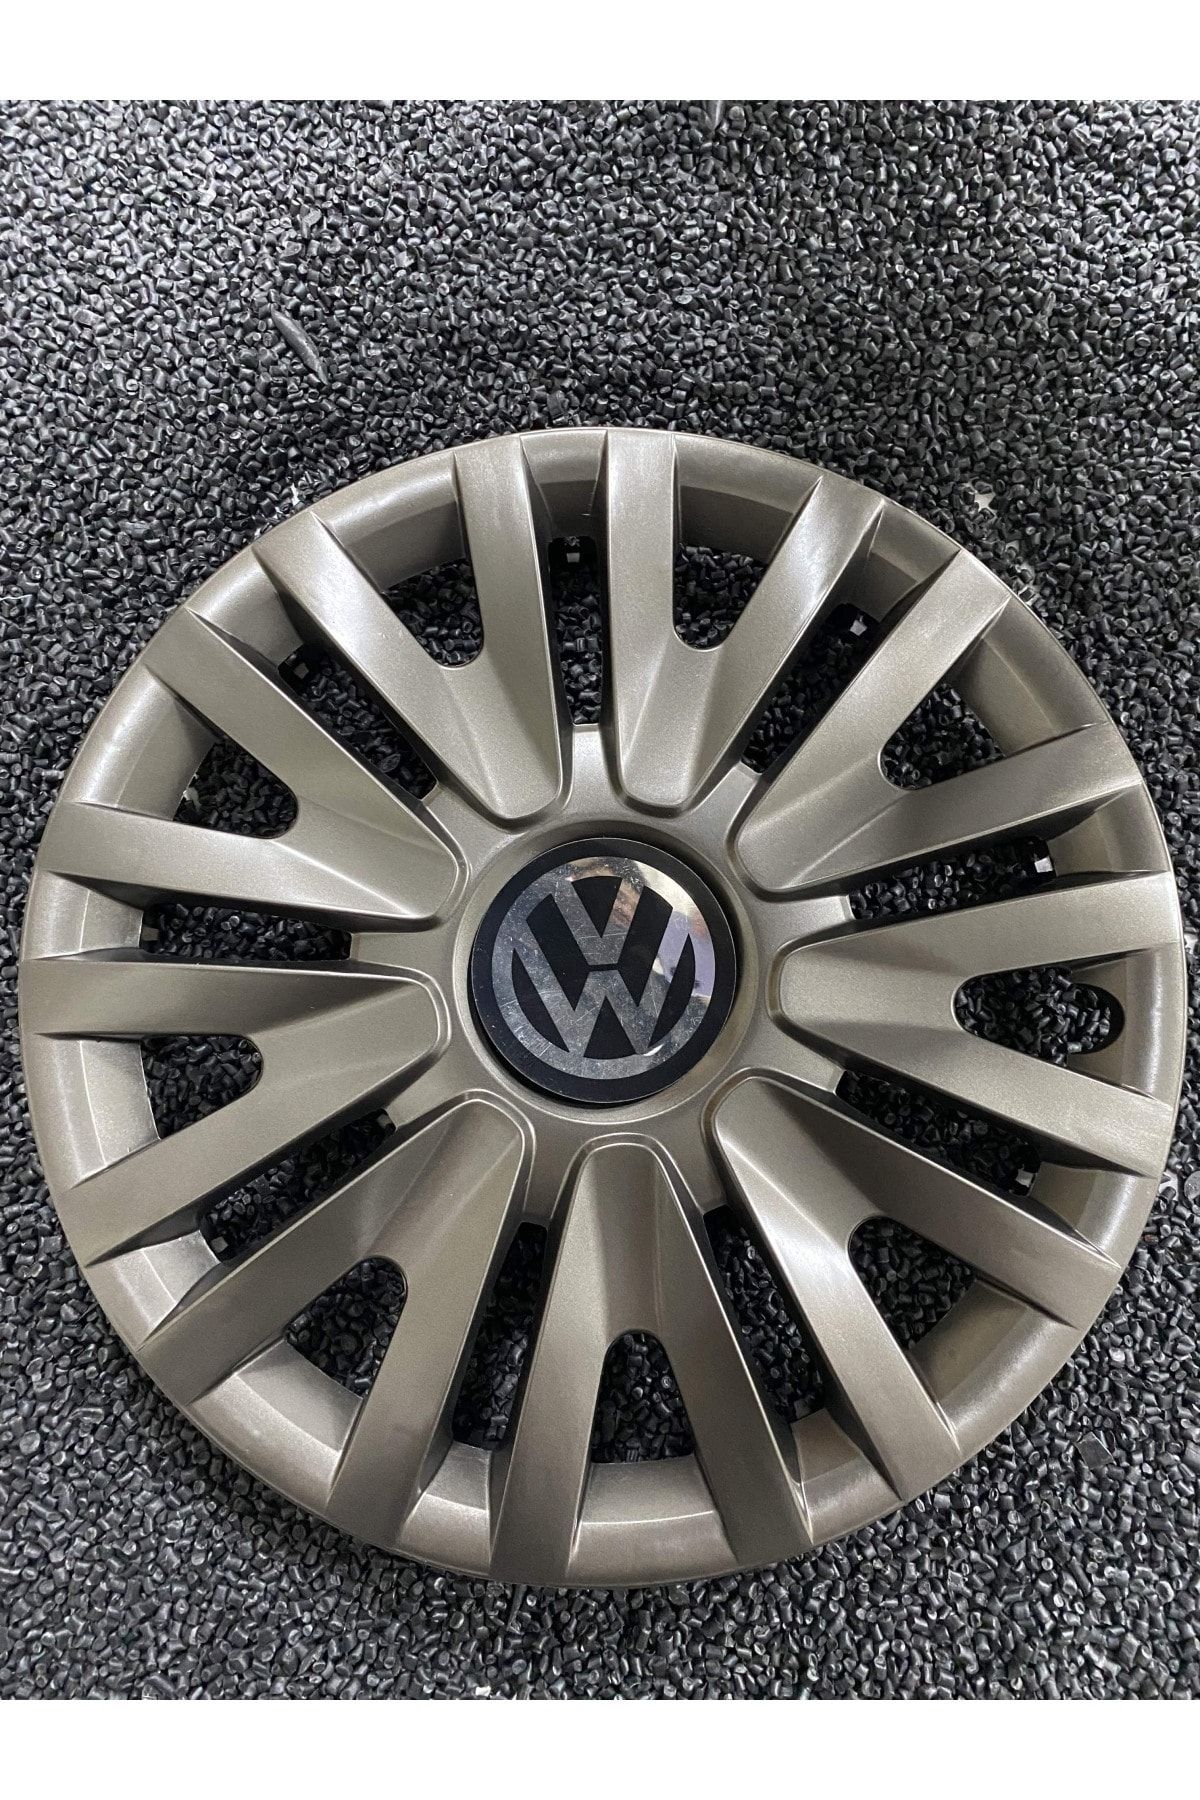 YILAPJANT Volkswagen Caddy 15" Inç Kırılmaz Jant Kapağı Füme 4 Adet